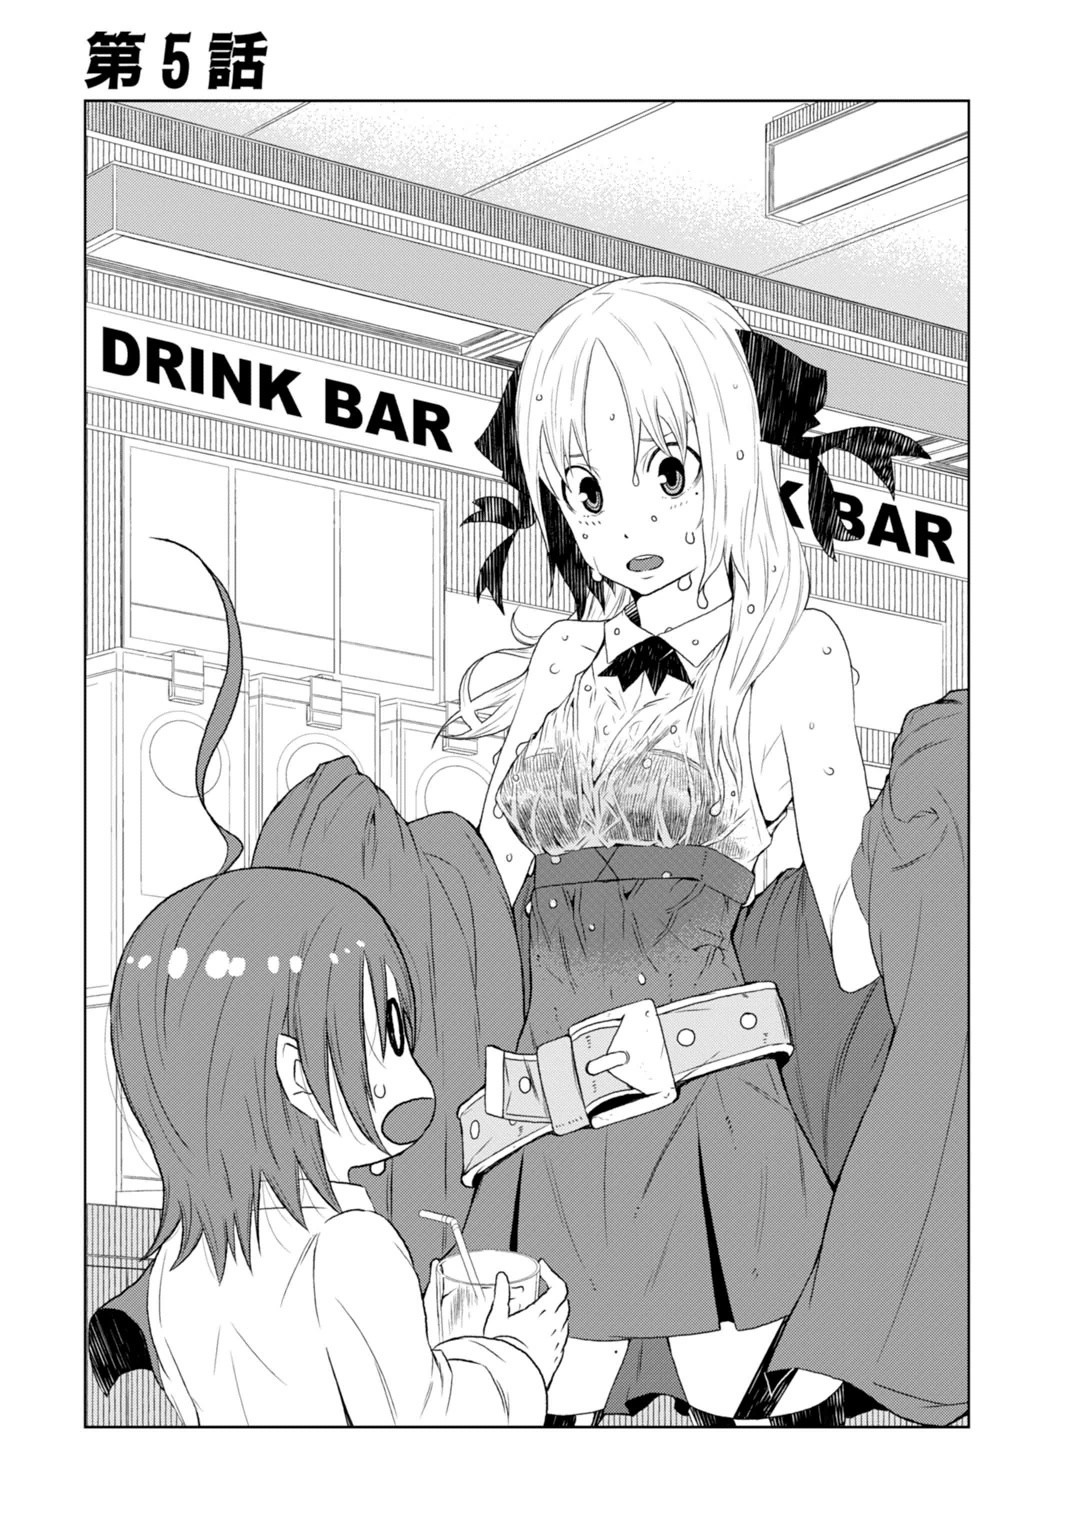 Toaru Kagaku no Accelerator Manga Chapter 005 | Toaru Majutsu no 